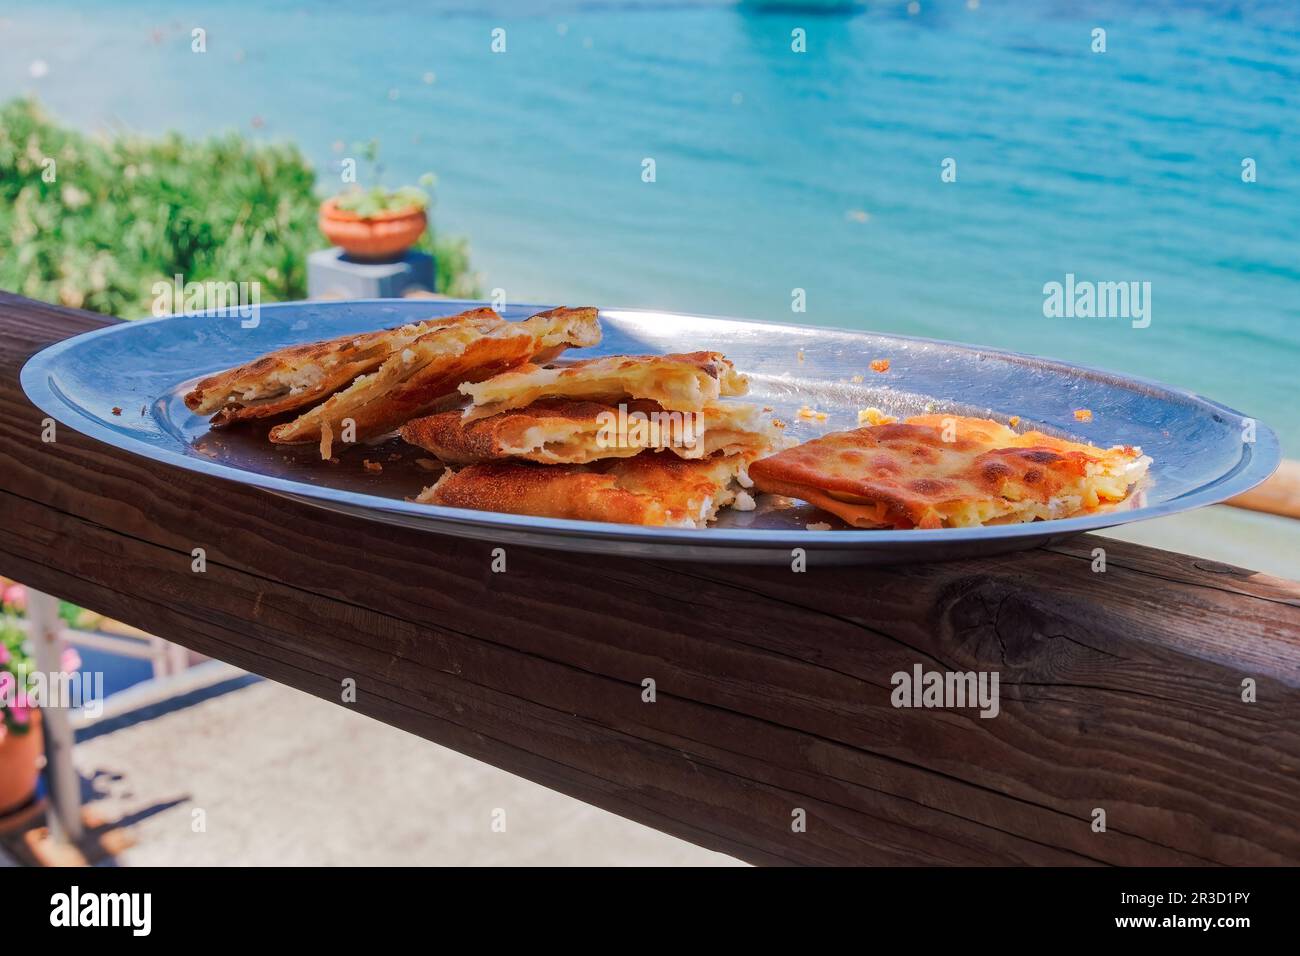 Un piatto con tiropita greca, porzioni di torta di formaggio feta con strati di pasta fillo imburrata sullo sfondo di un mare sfocato. Foto Stock